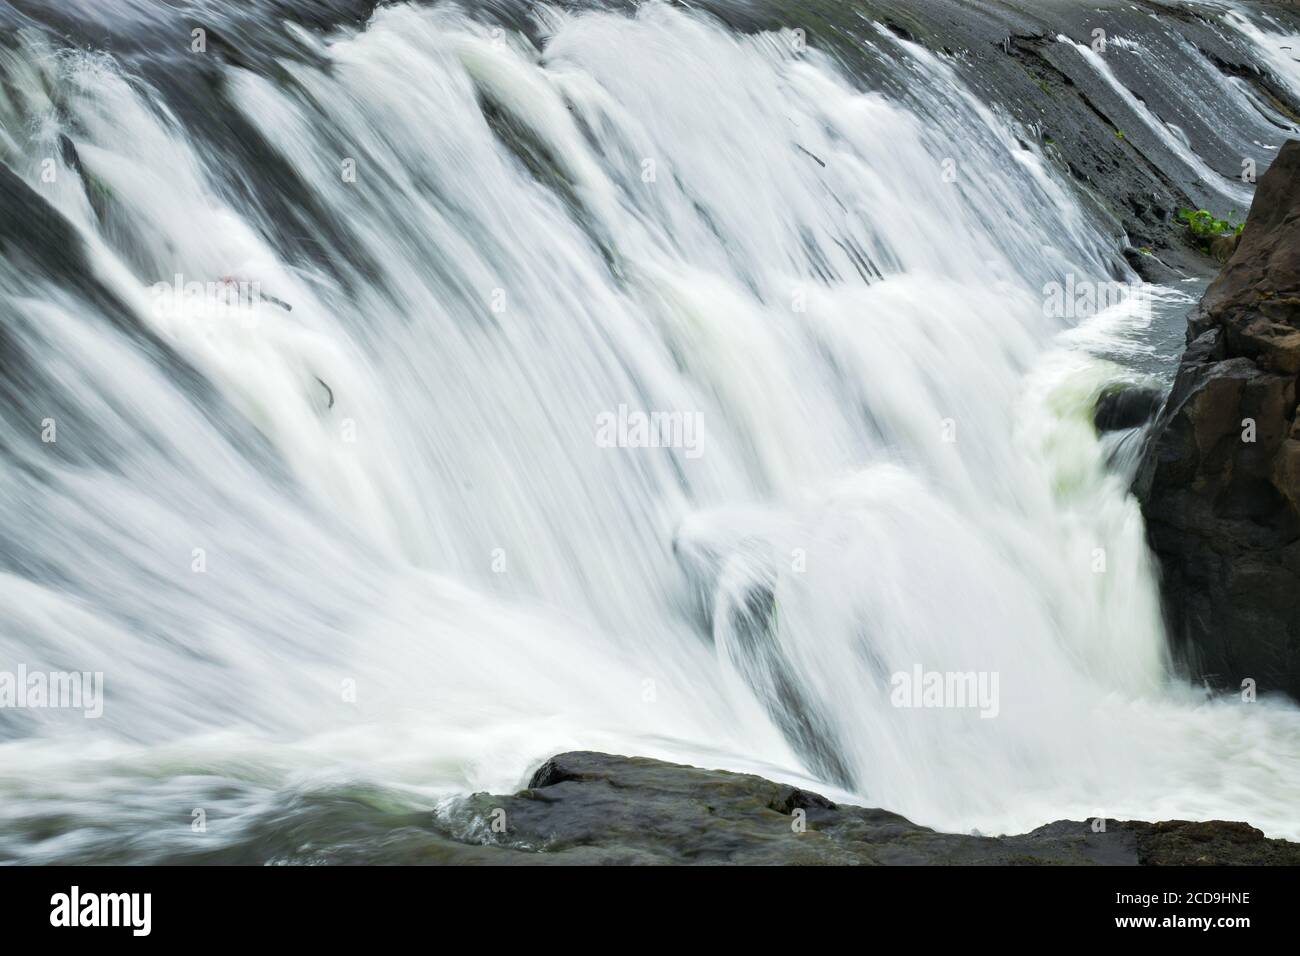 Ein Wasserfall ist ein Bereich, in dem Wasser über ein fließt Vertikaler Abfall oder eine Reihe steiler Tropfen im Verlauf eines Baches oder FlussWasserfall treten auch dort auf Stockfoto